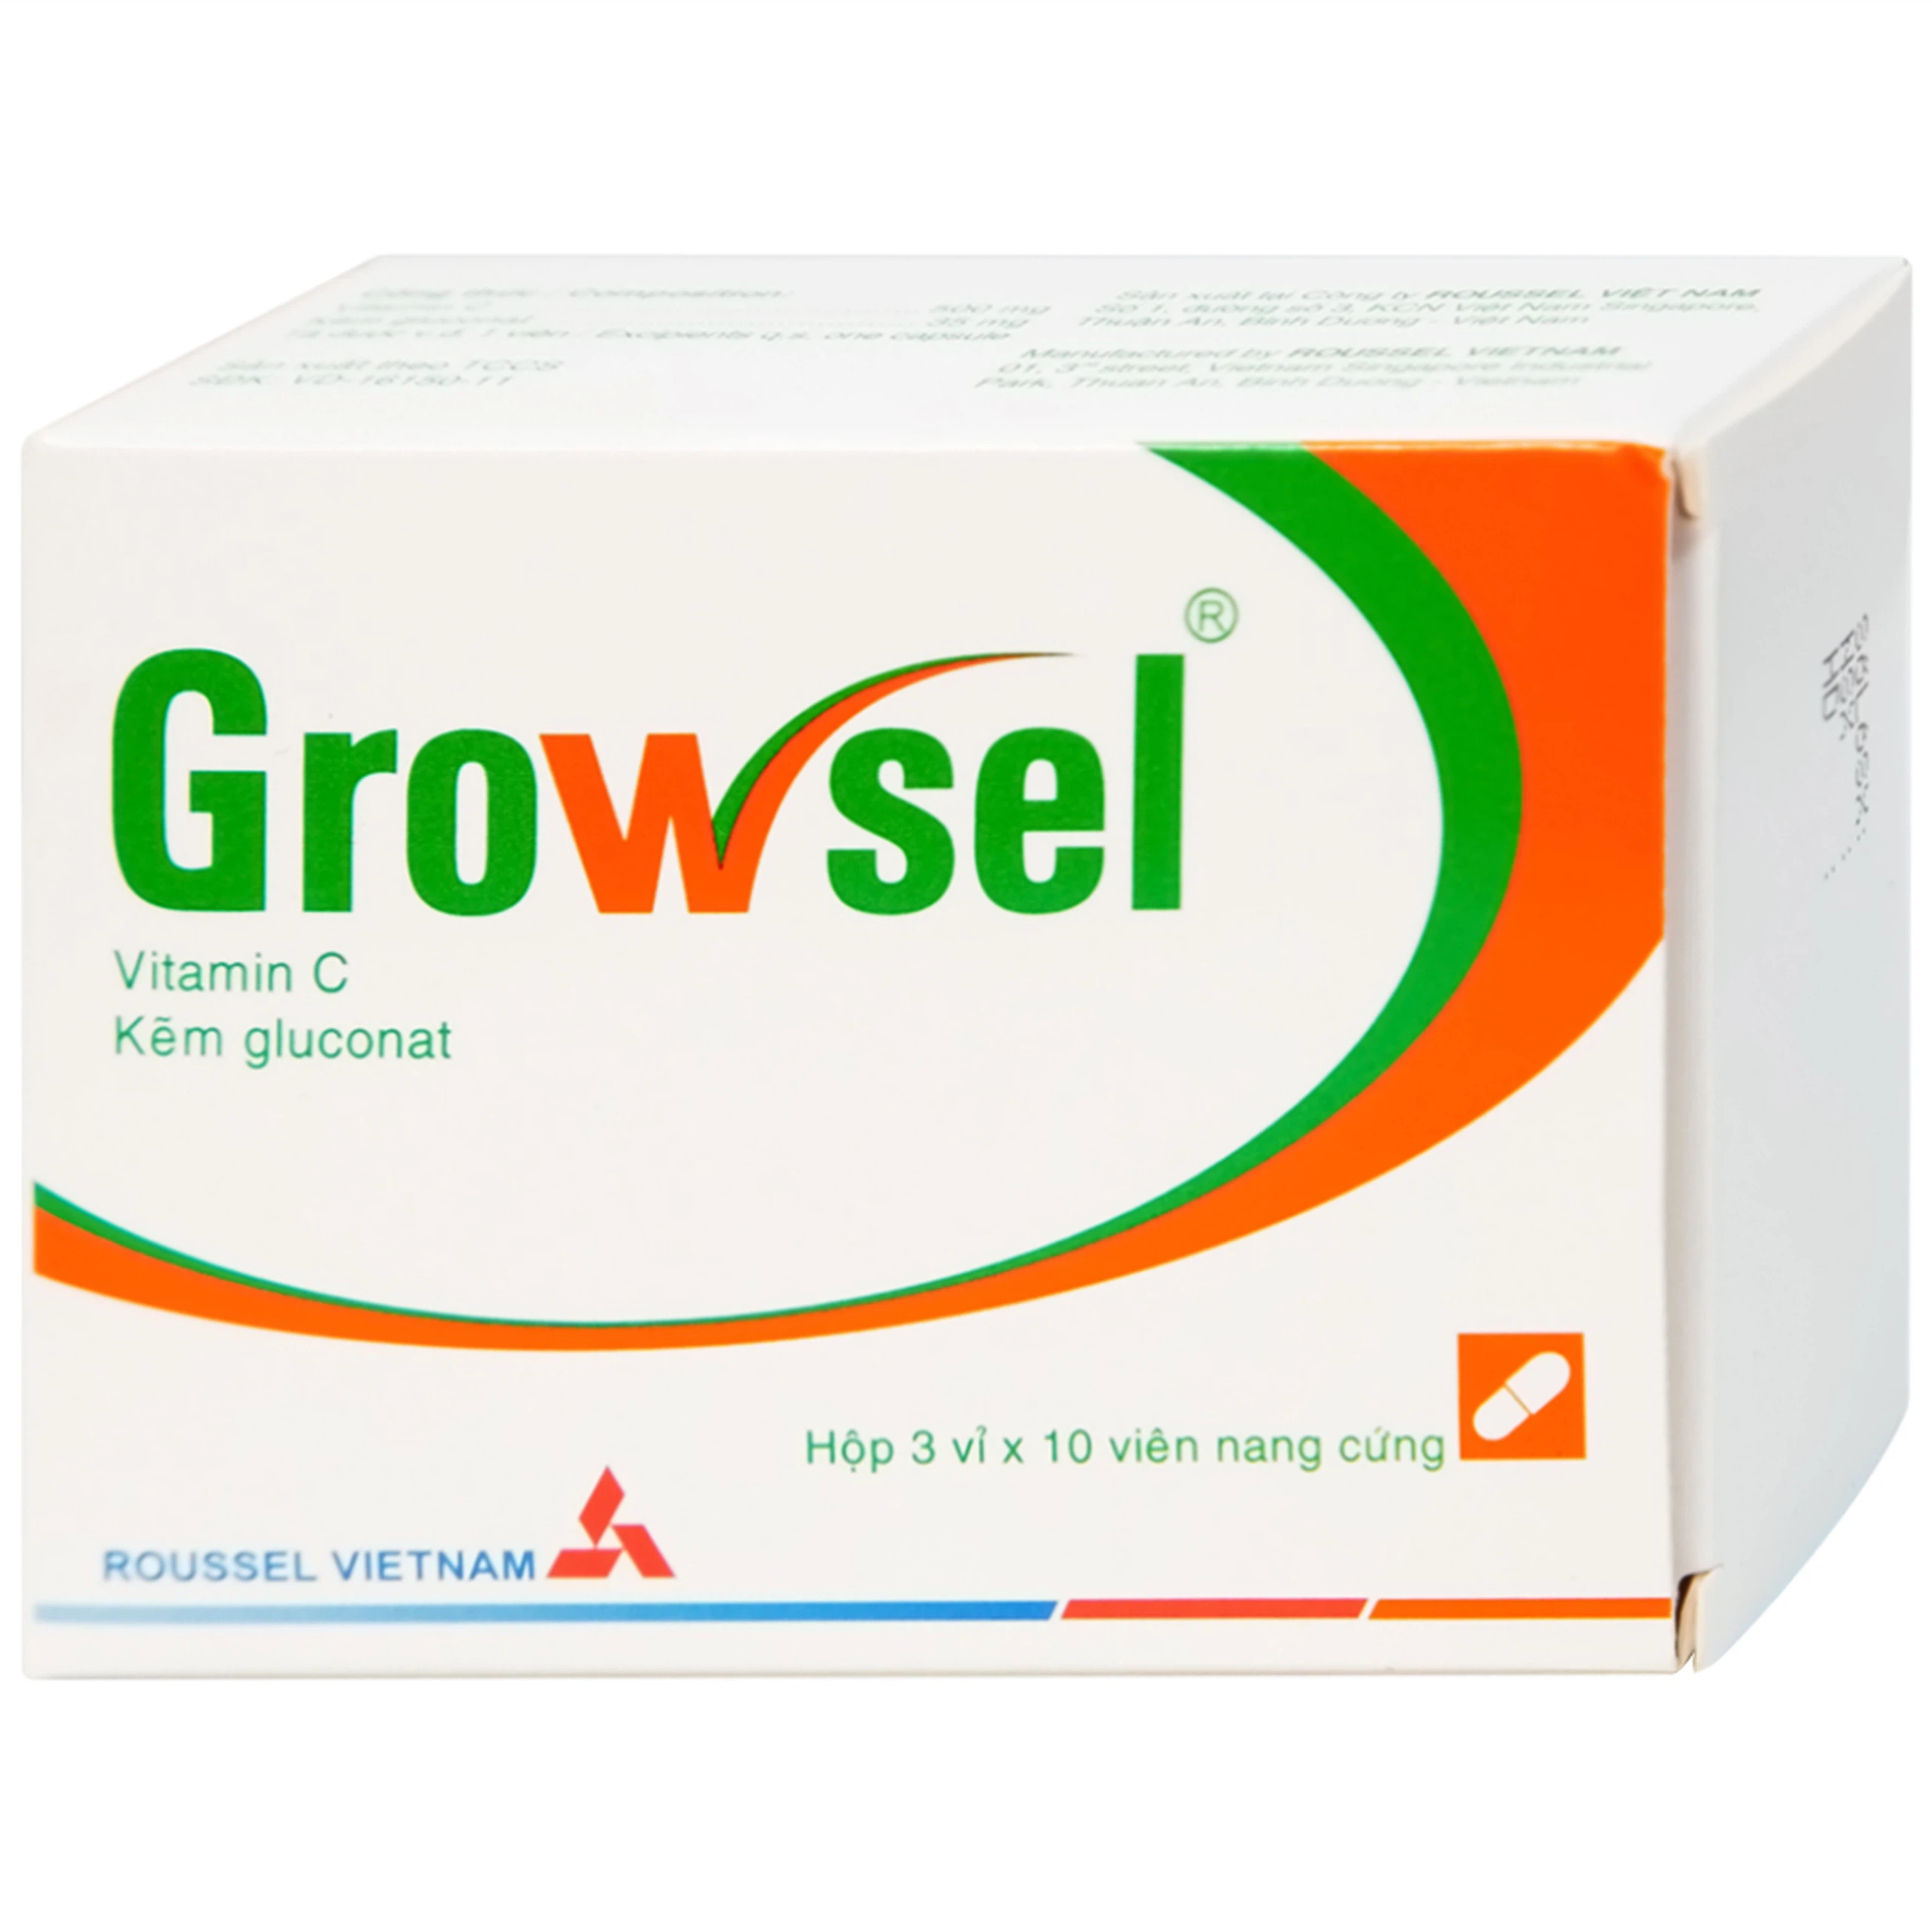 Thuốc Growsel Roussel điều trị bệnh do thiếu vitamin C và kẽm (3 vỉ x 10 viên)